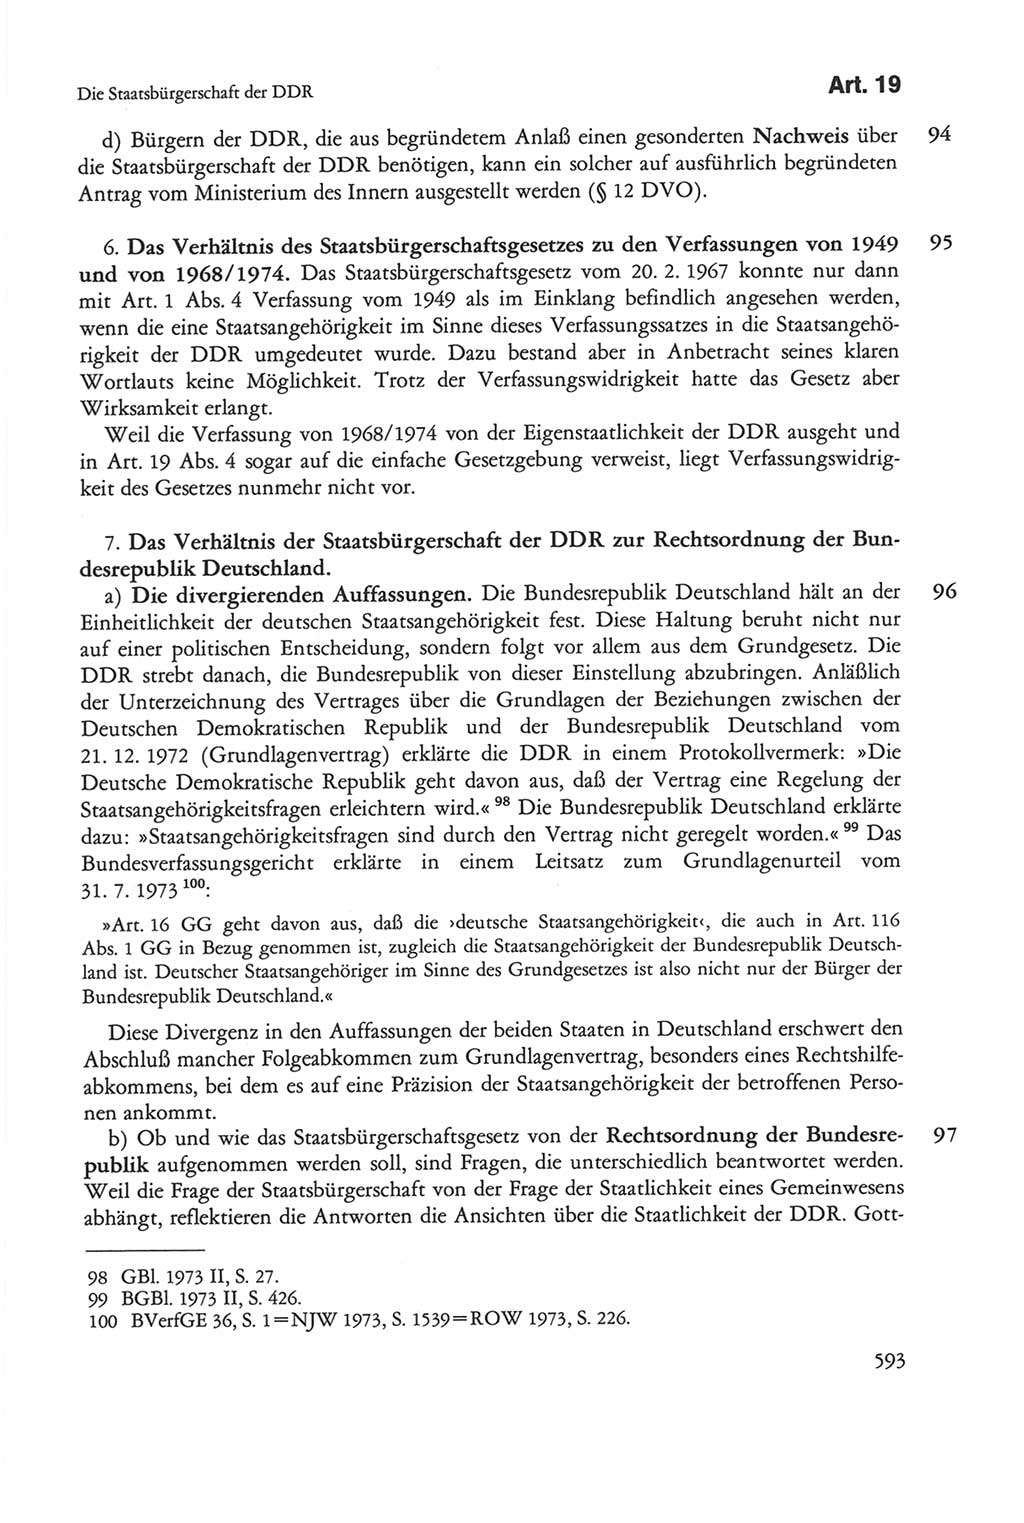 Die sozialistische Verfassung der Deutschen Demokratischen Republik (DDR), Kommentar mit einem Nachtrag 1997, Seite 593 (Soz. Verf. DDR Komm. Nachtr. 1997, S. 593)